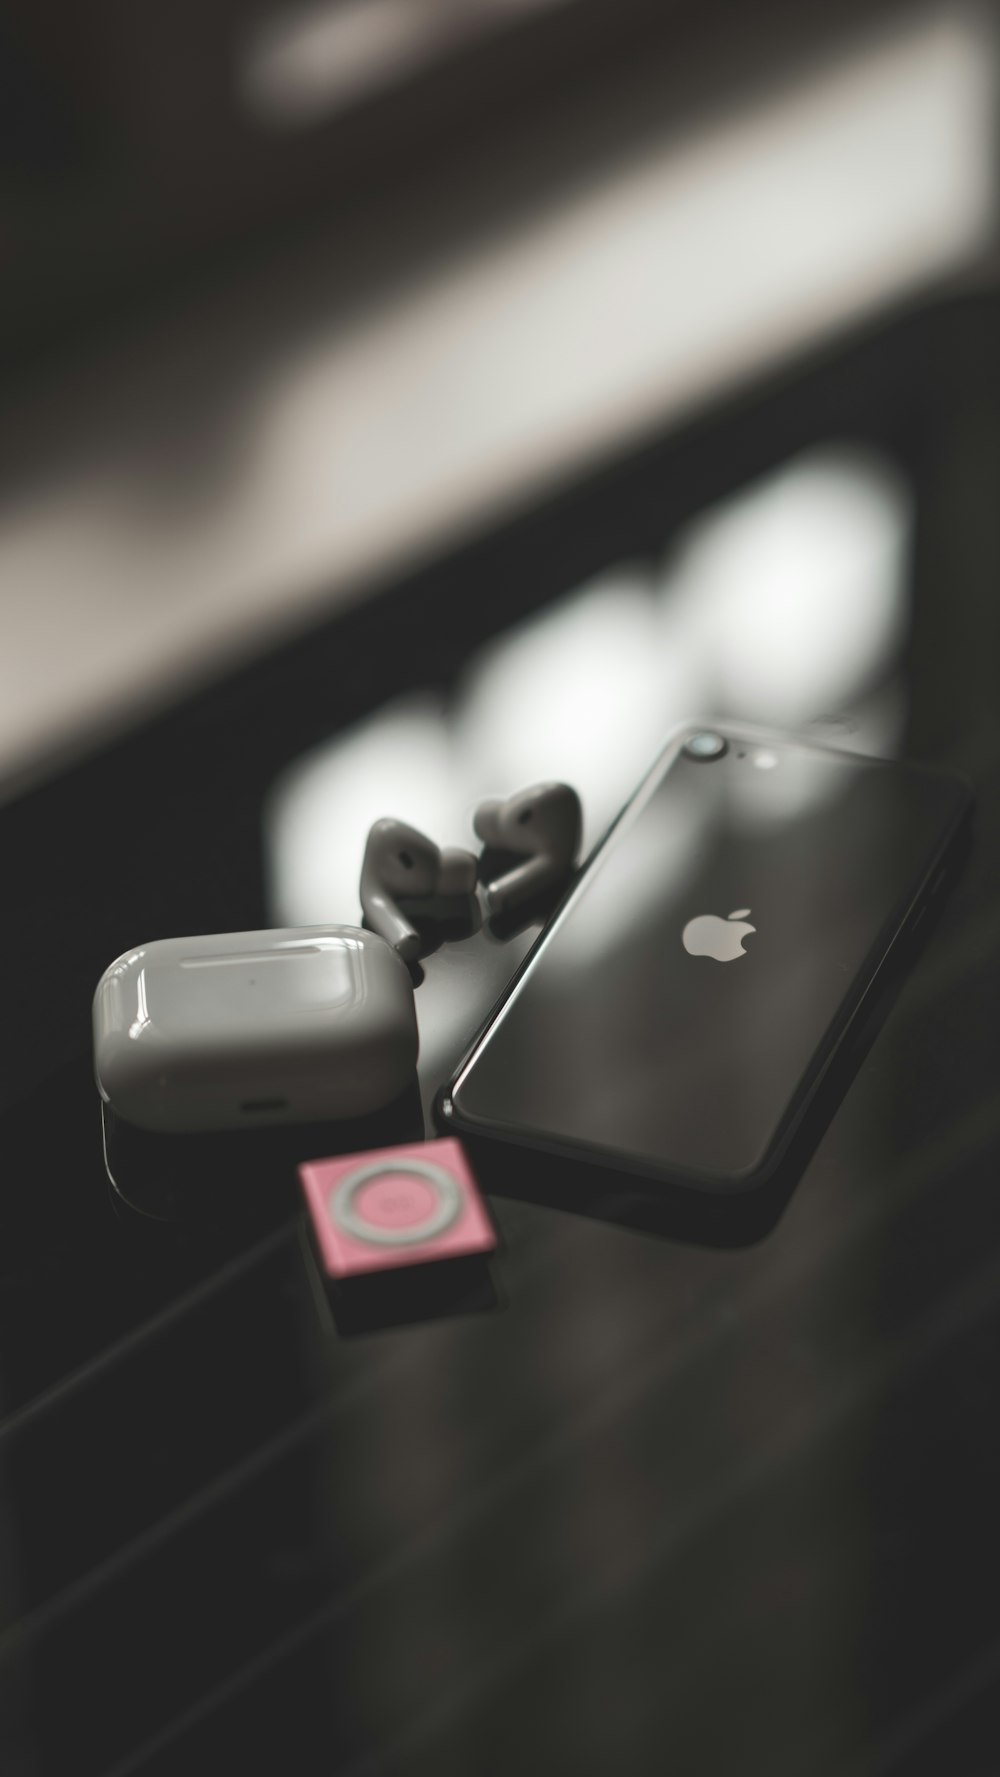 iPhone 7 noir avec écouteurs Beats by Dr Dre noirs et rouges